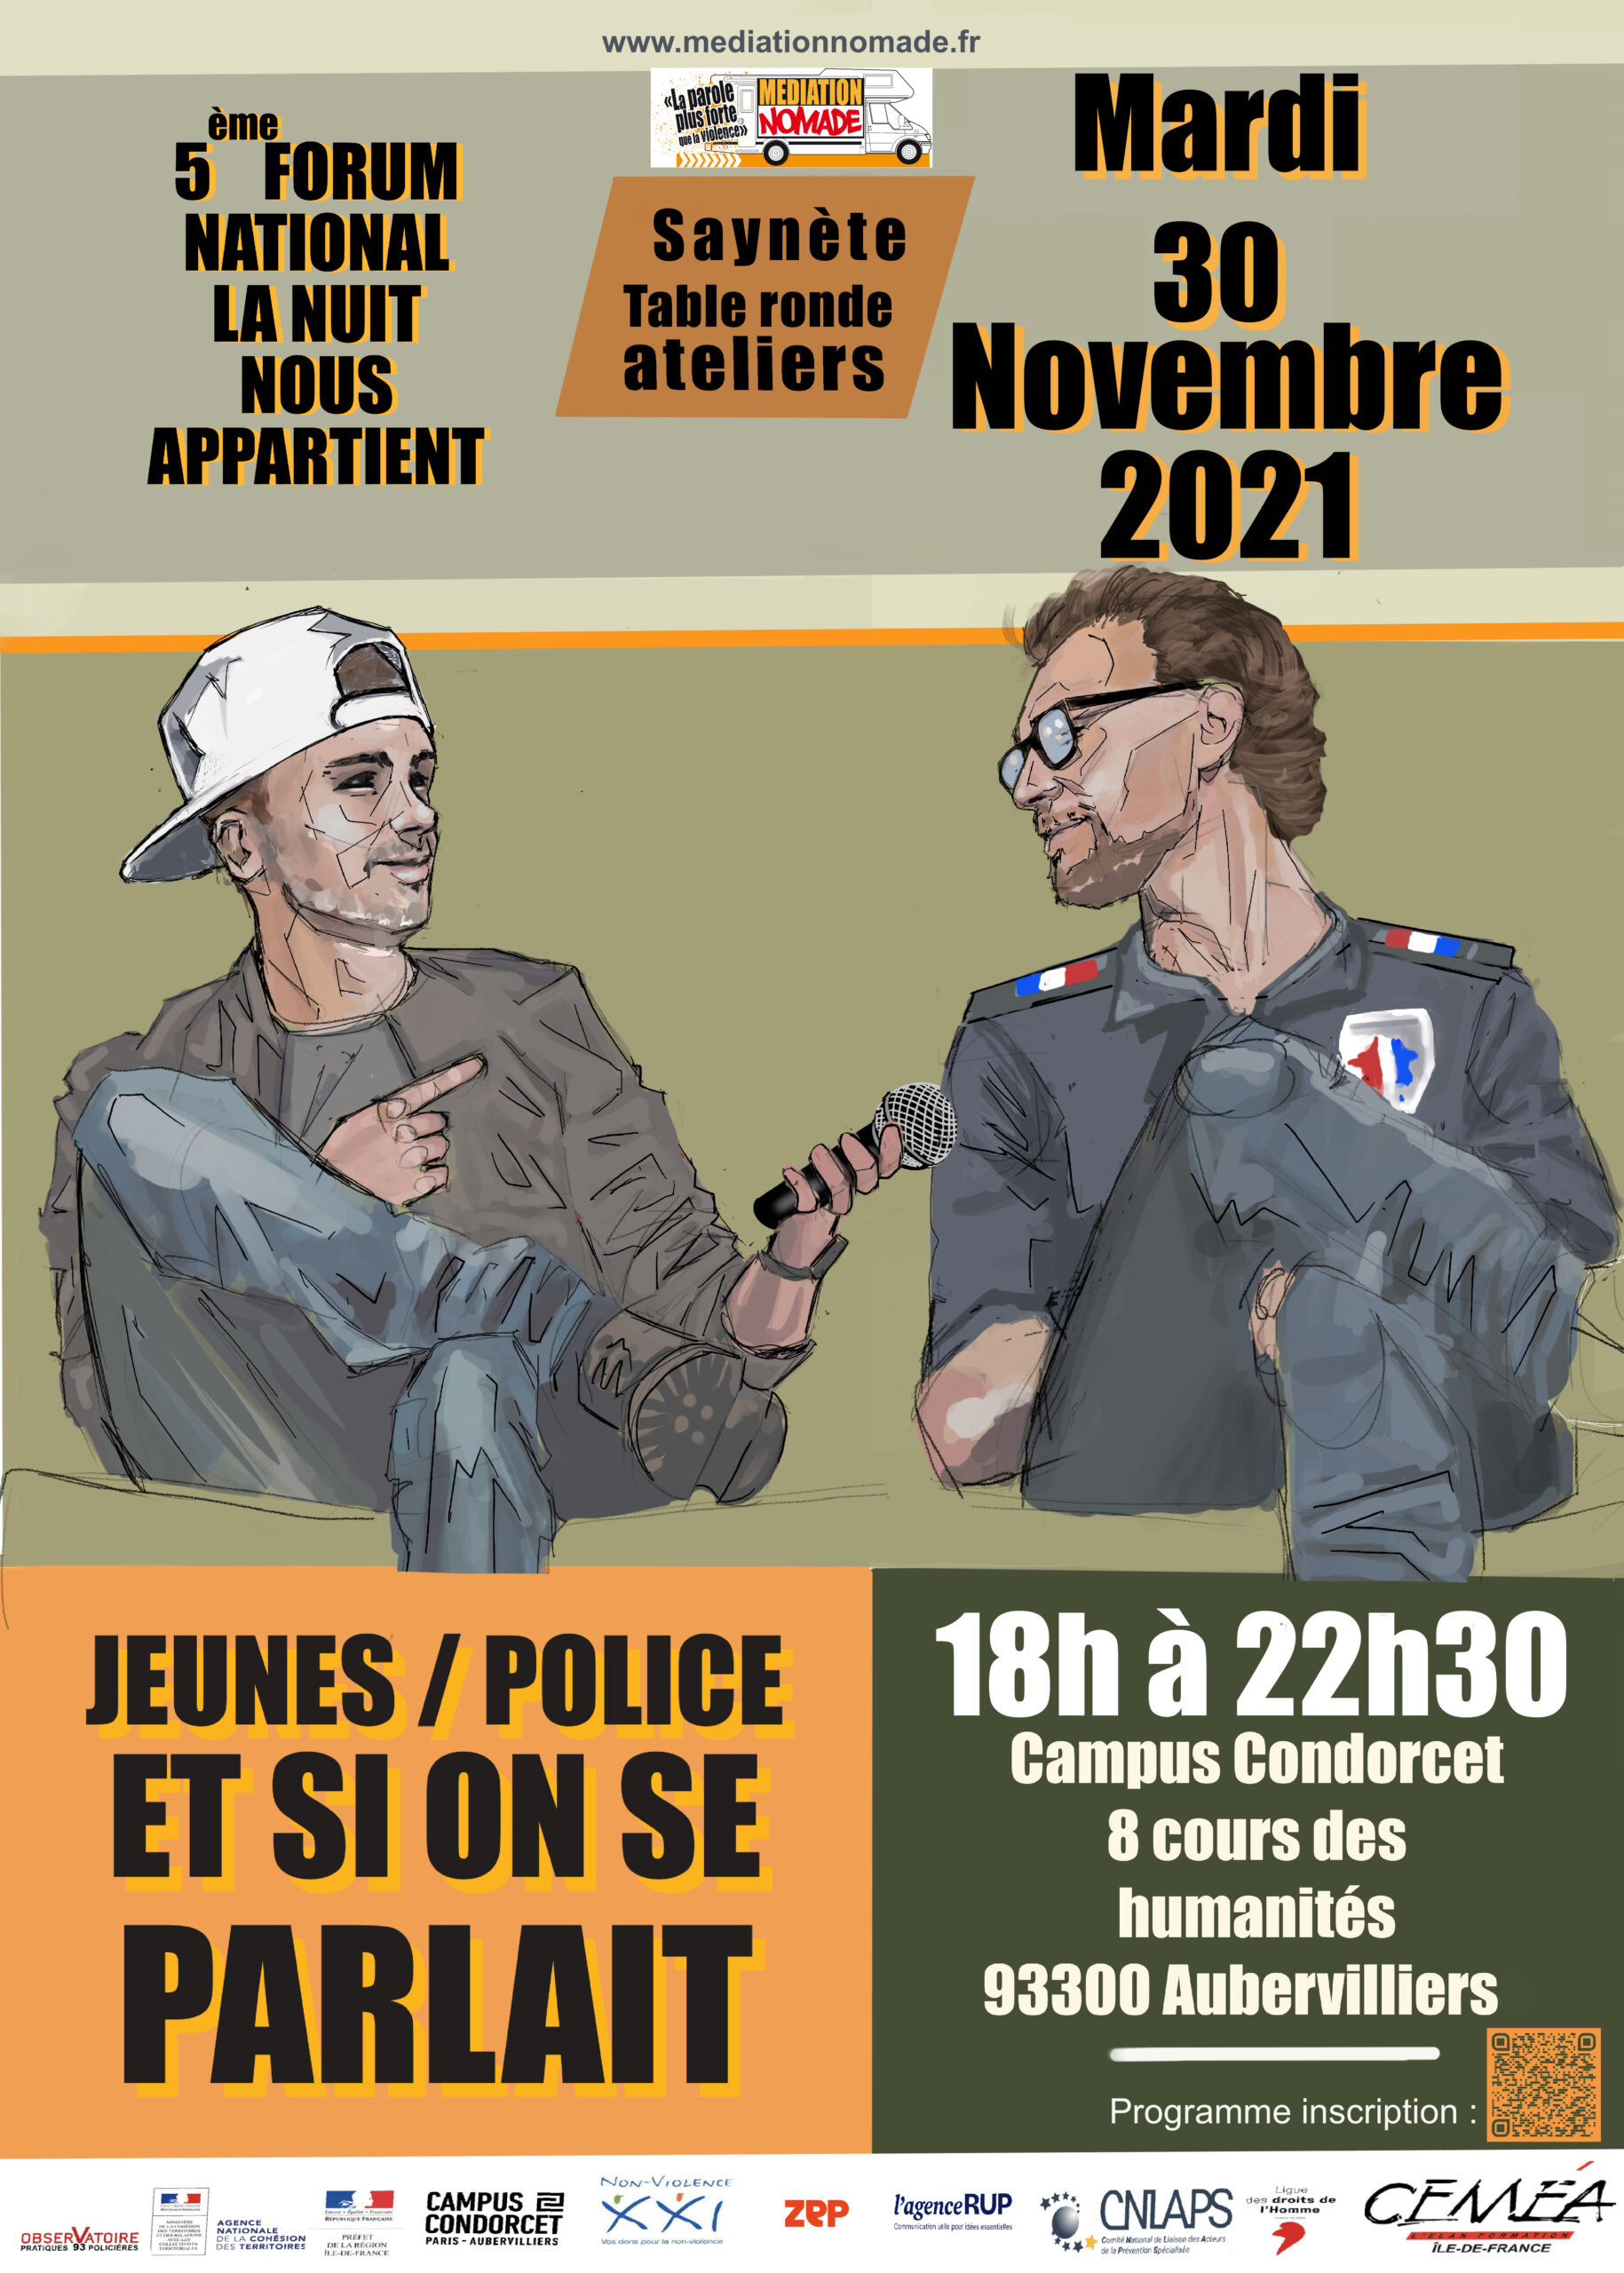 Forum de rencontre : "Jeunes / Police et si on se parlait"